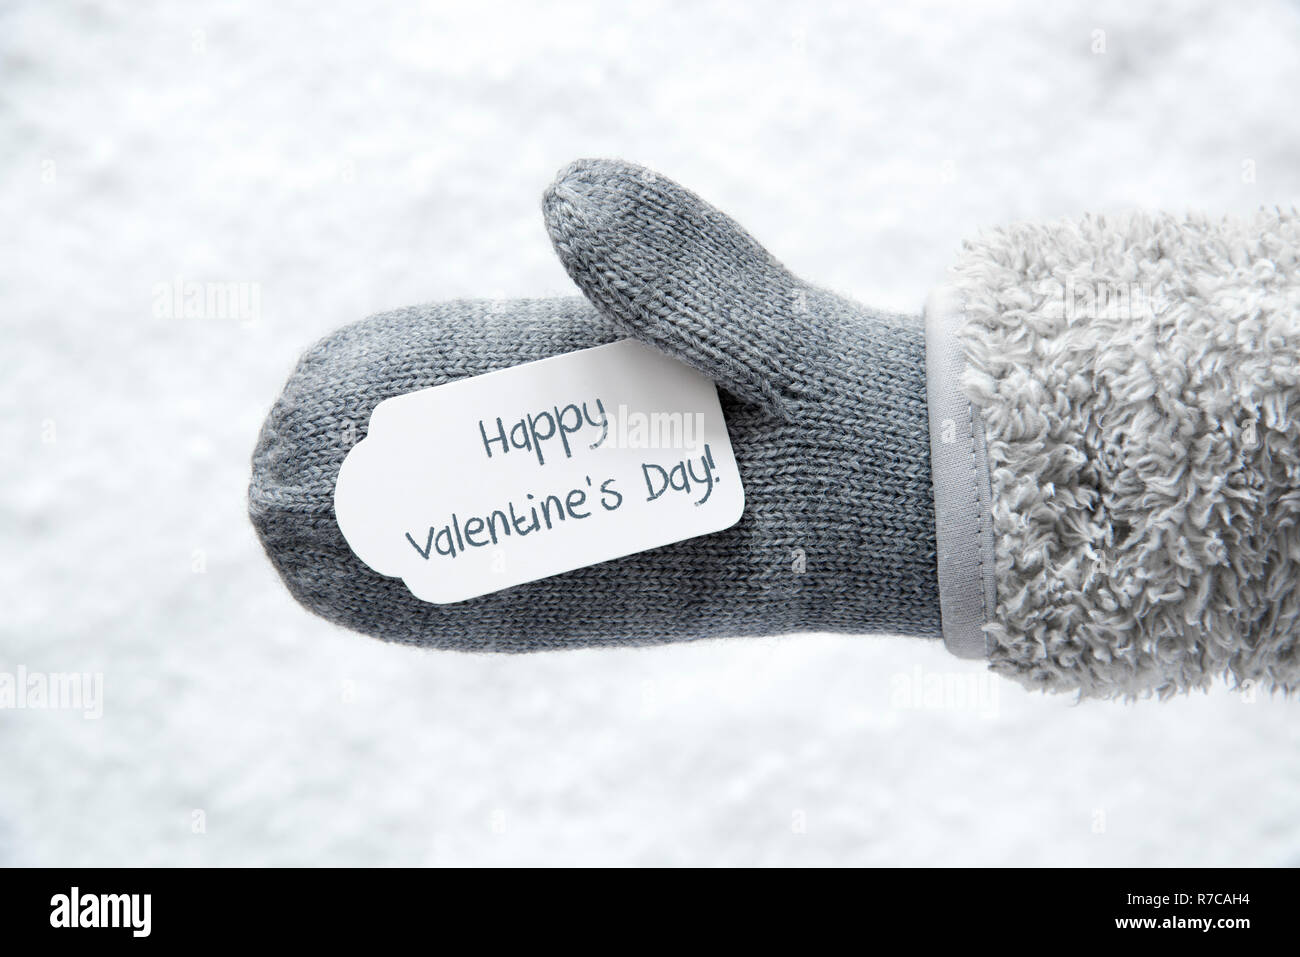 Guante de lana con etiqueta con texto en inglés Feliz Día de San Valentín.  Fondo blanco de nieve Fotografía de stock - Alamy